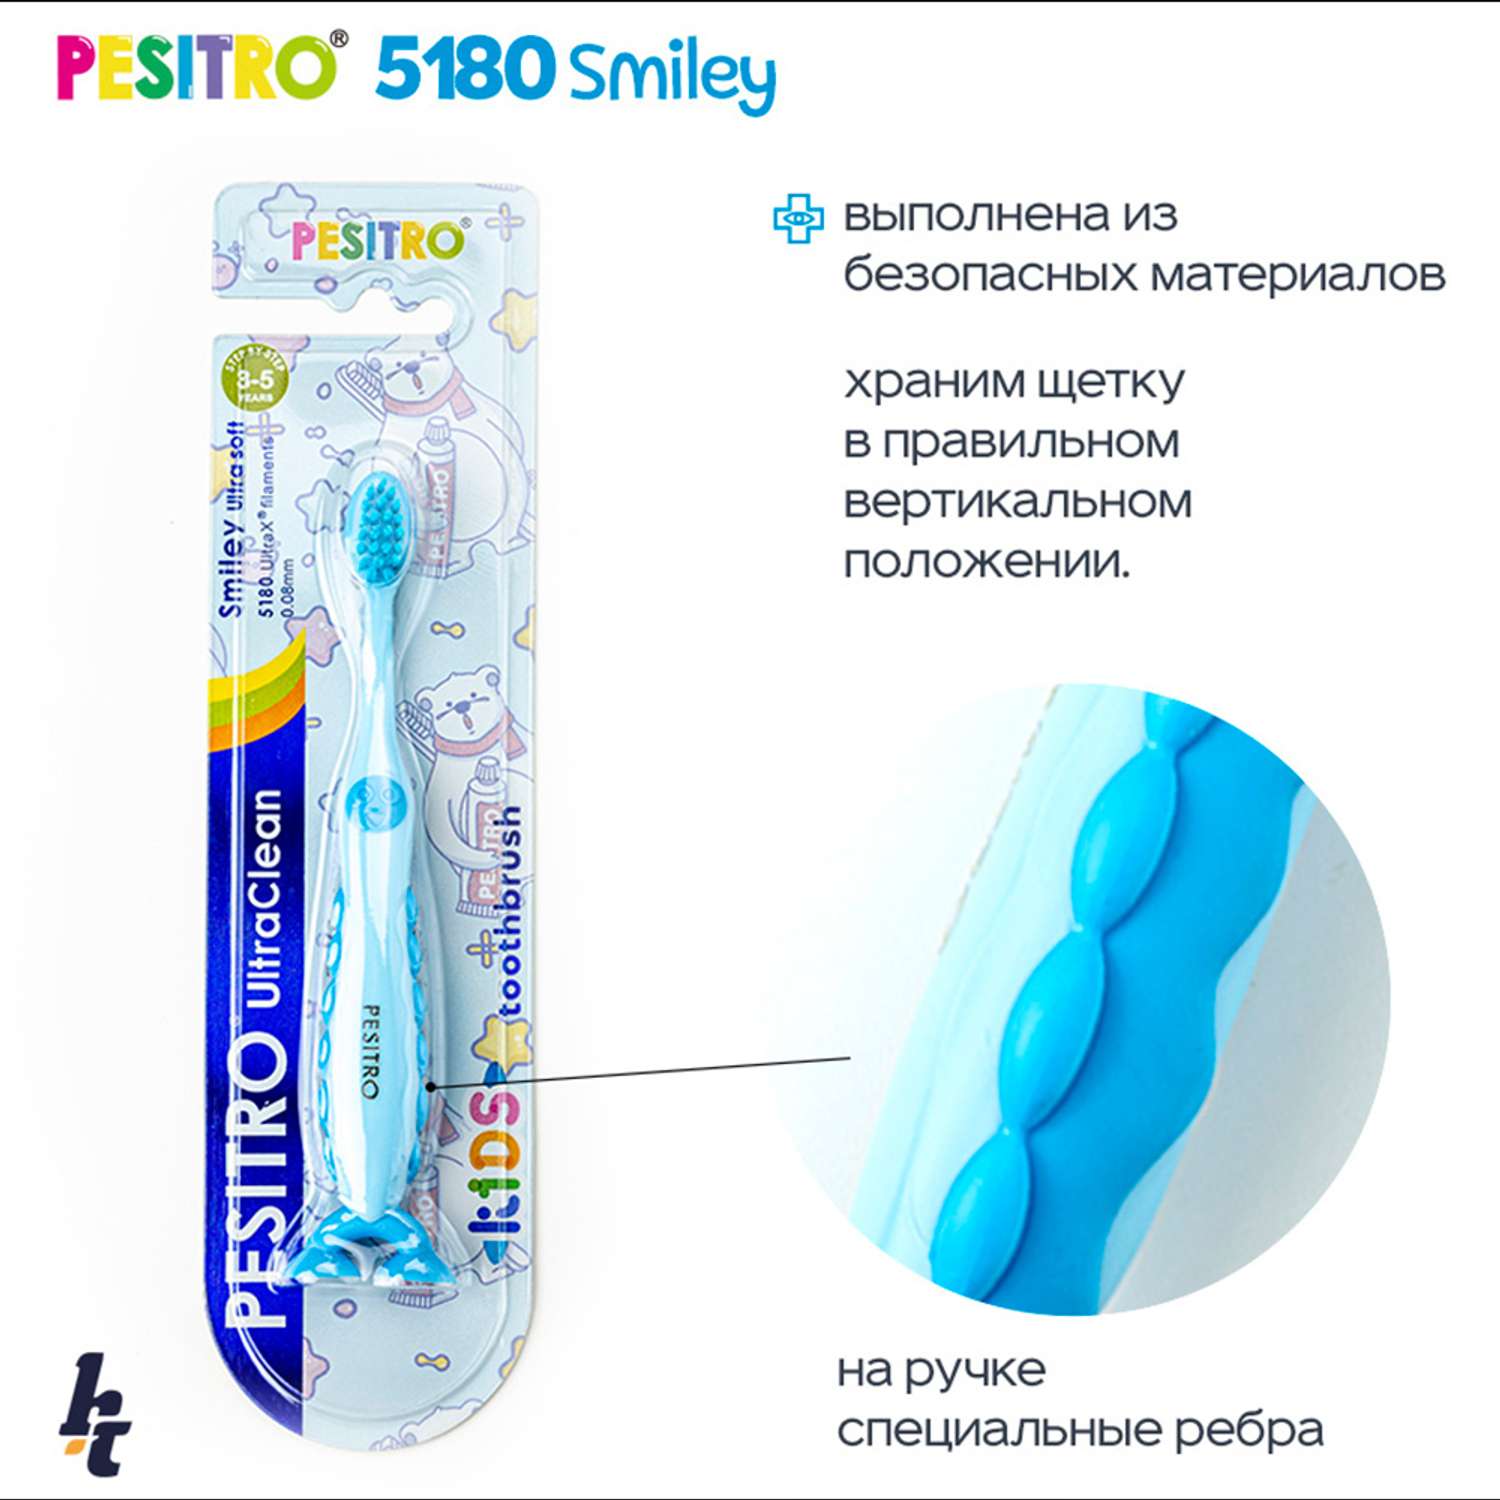 Детская зубная щетка Pesitro Smiley Ultra soft 5180 Голубая - фото 4